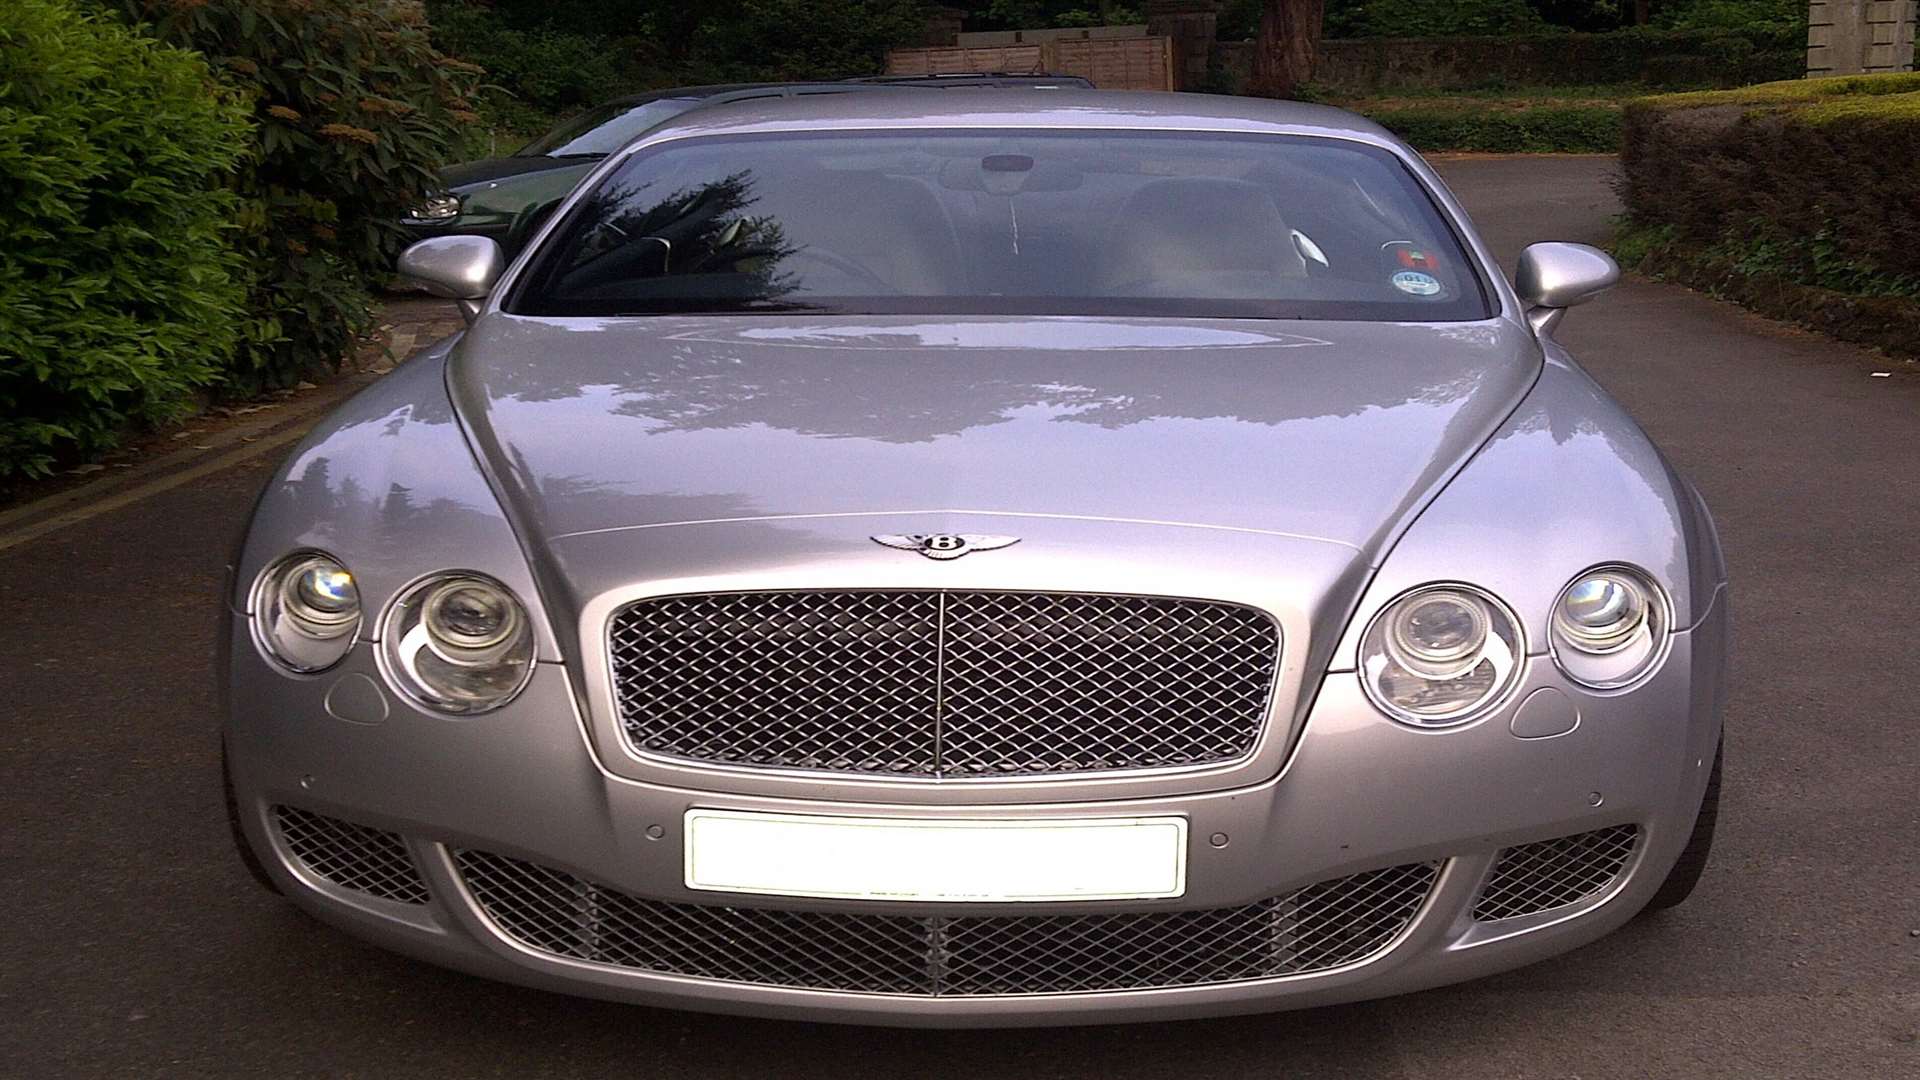 Ahmed's Bentley